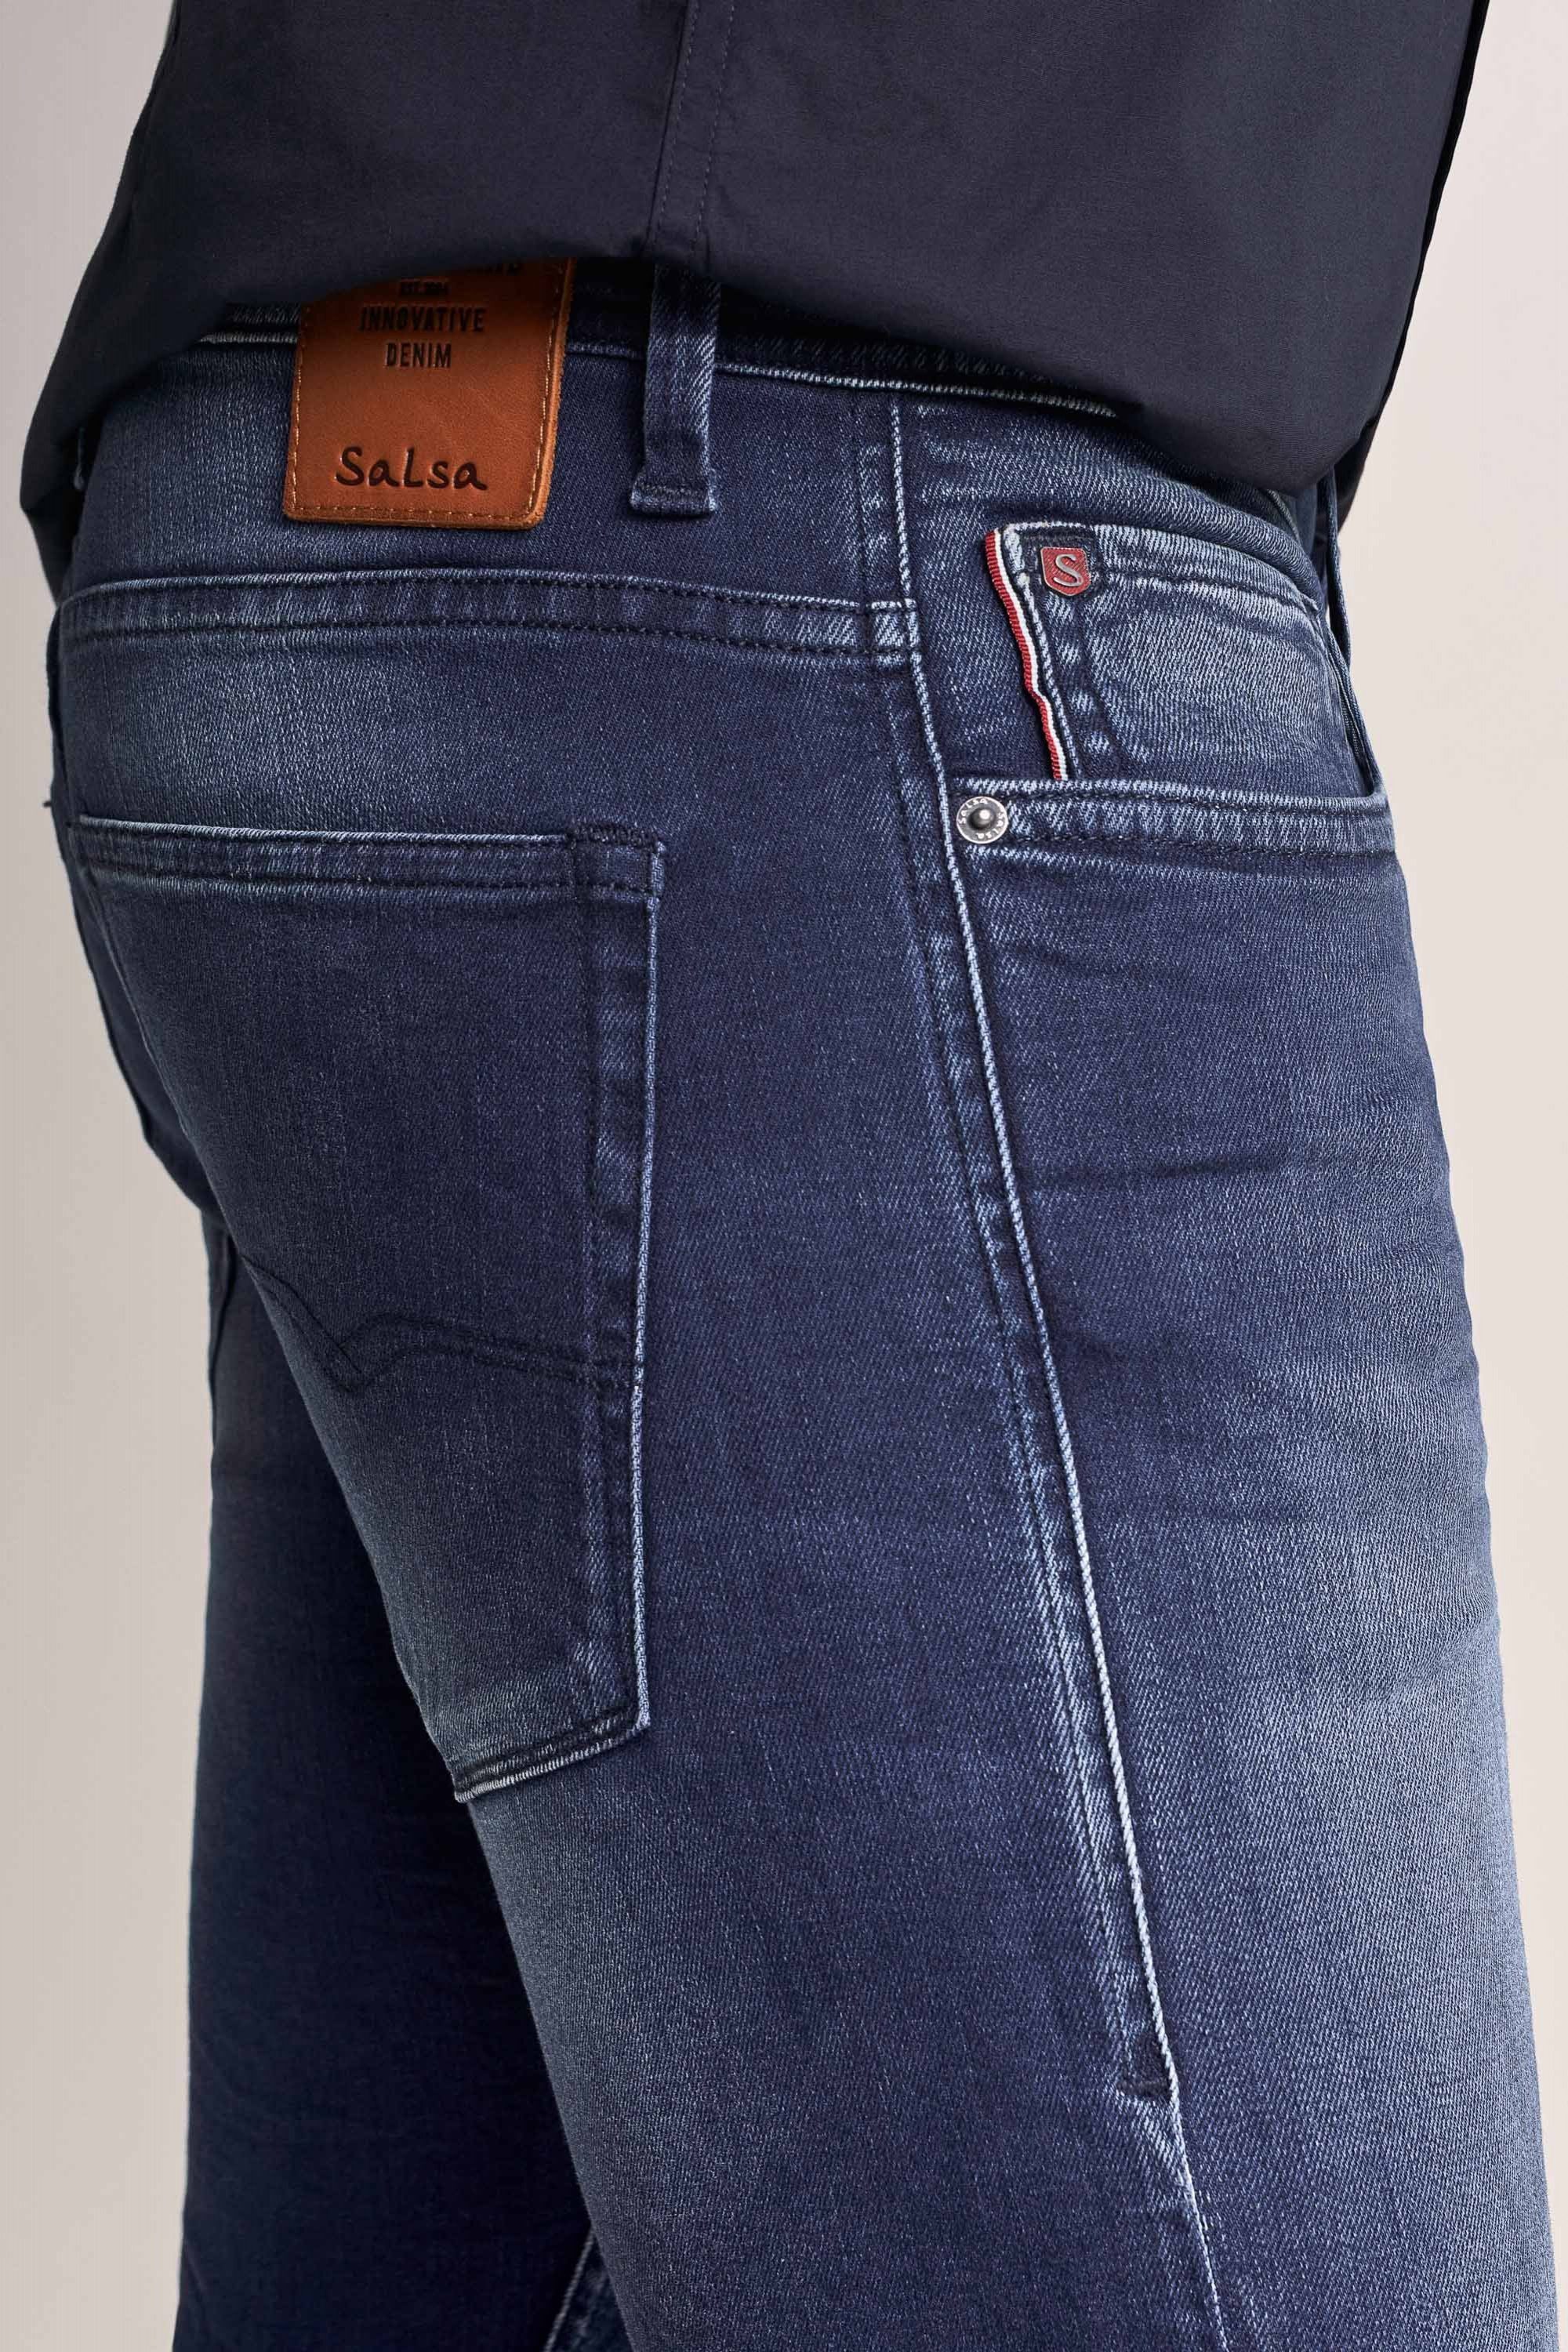 Salsa 5-Pocket-Jeans SALSA washed used CLASH dark 125222.8504 blue JEANS